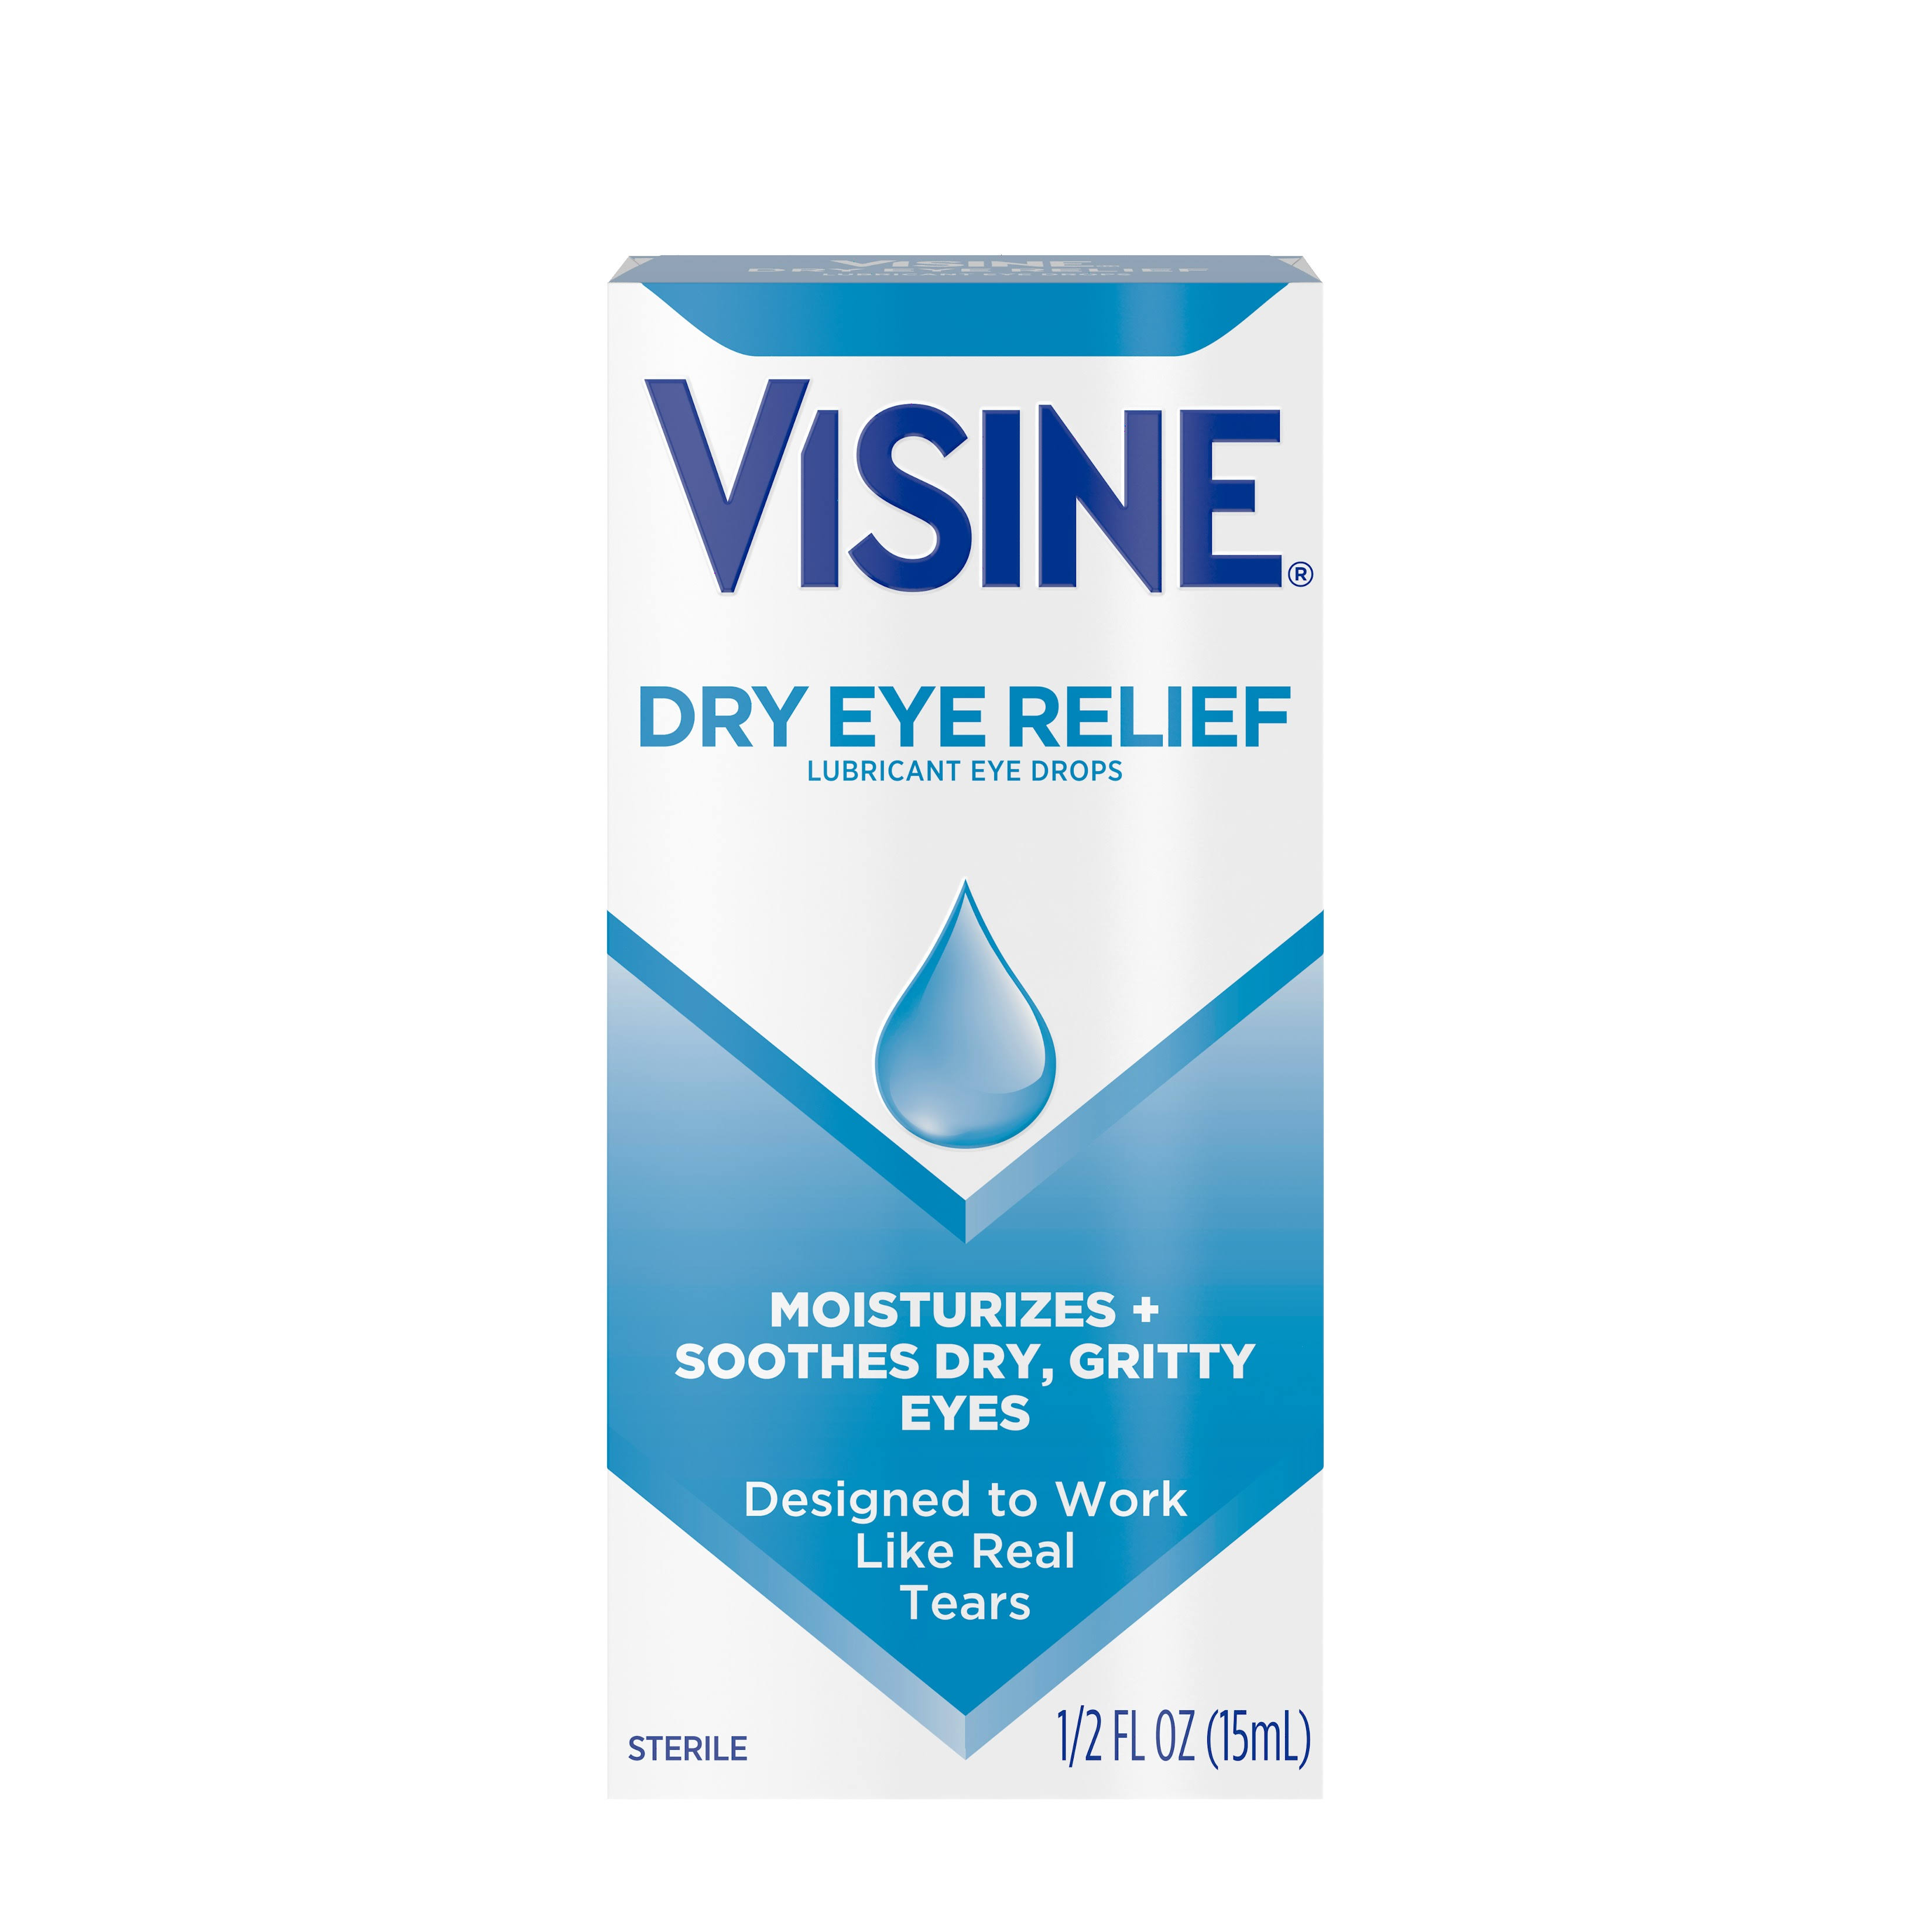 Visine Dry Eye Relief Lubricant Eye Drops - 1/2 fl oz